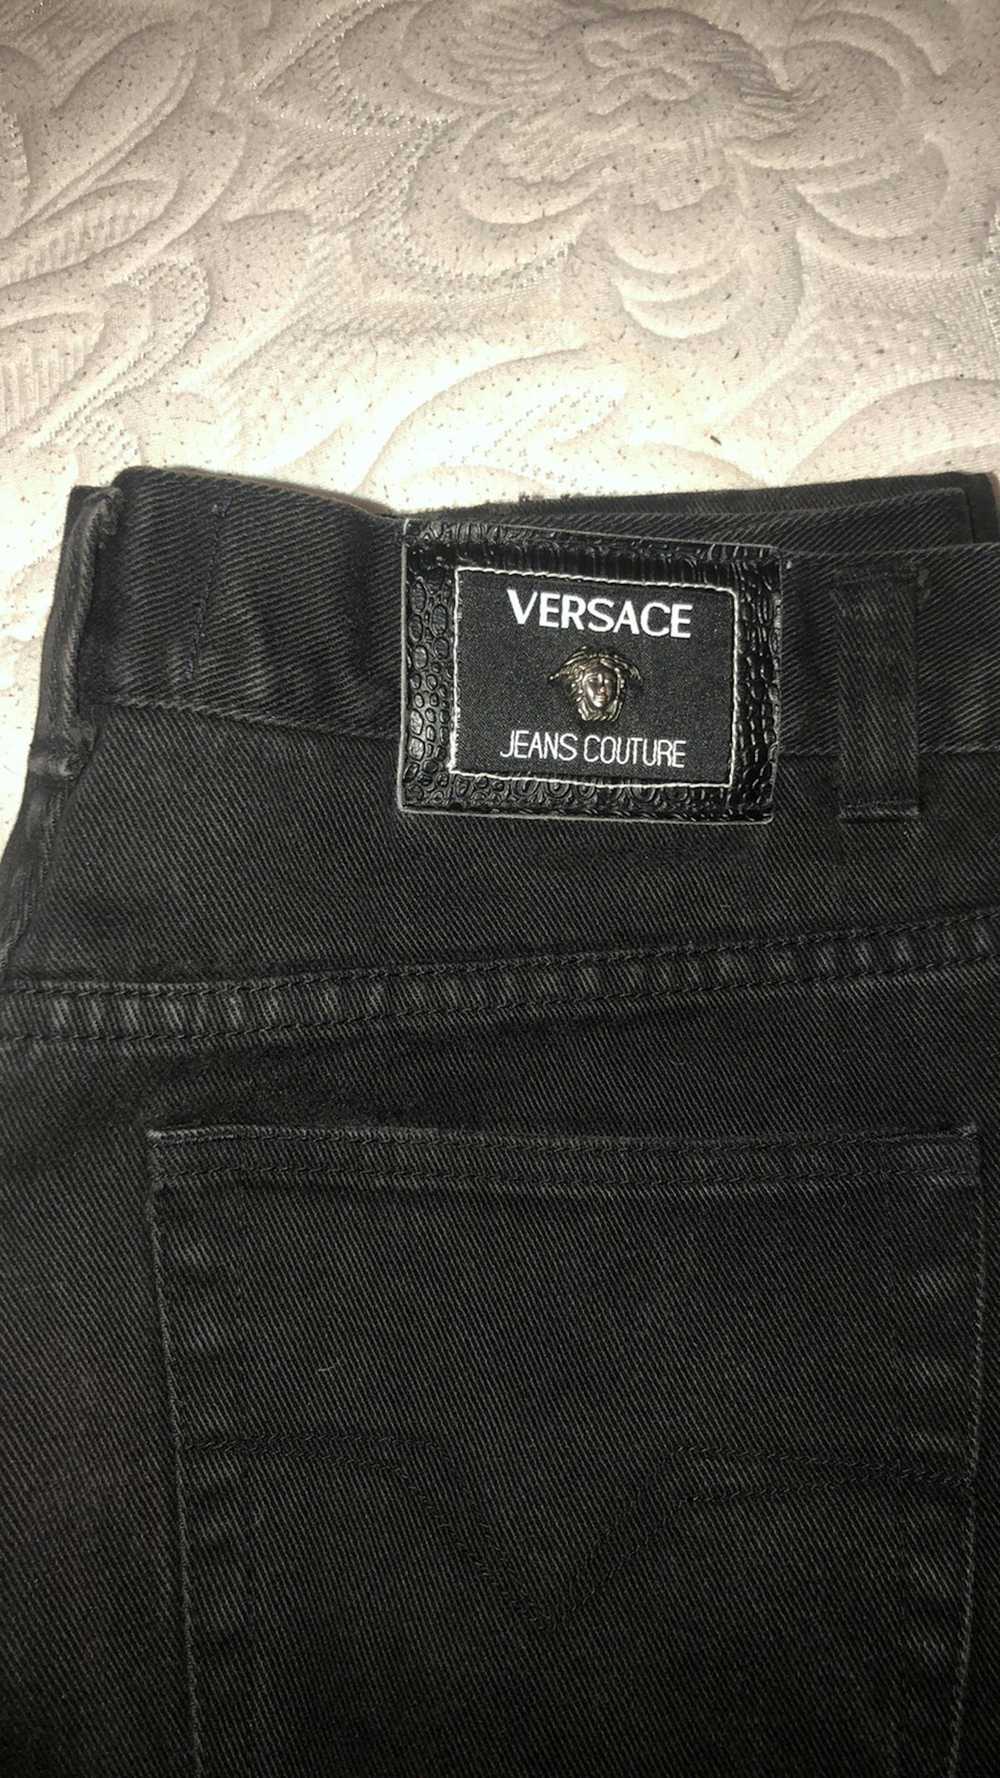 Versace Jeans Couture Versace Jeans couture - image 1